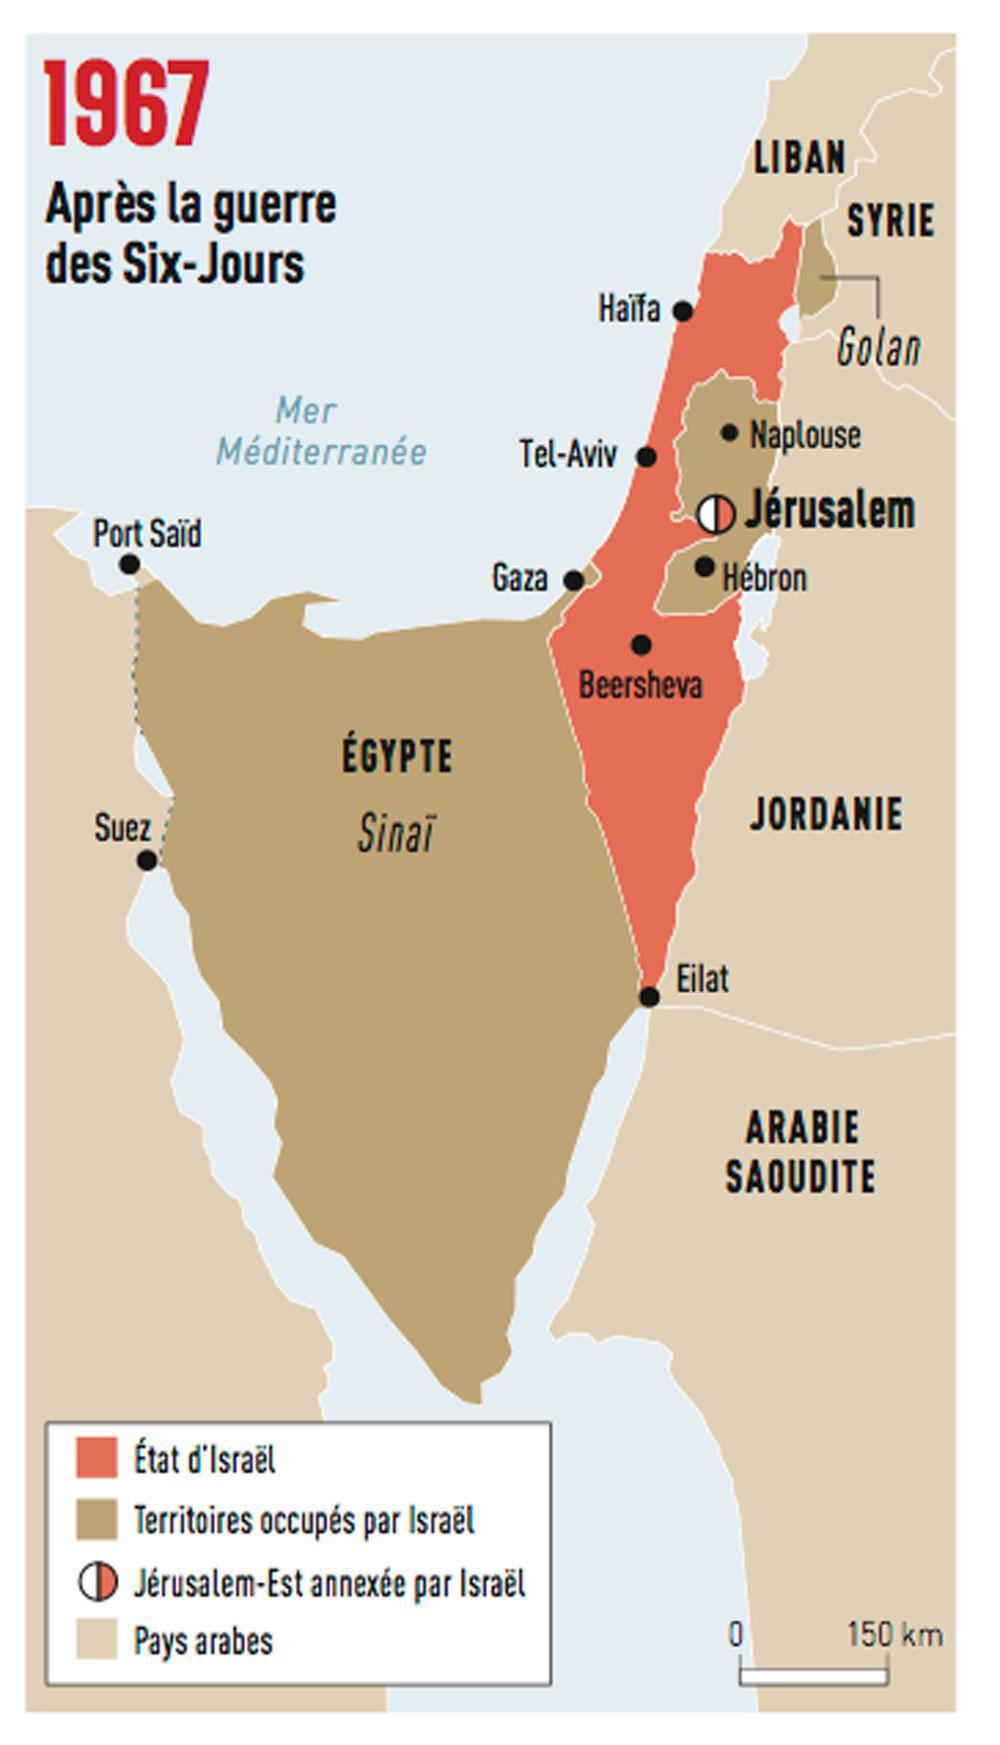 Du lundi 5 juin, 7 heures du matin, au samedi 10 juin : 132 heures auront suffi à Israël pour briser les armées égyptienne, jordanienne et syrienne. Sinaï, bande de Gaza, Cisjordanie, plateau du Golan et Jérusalem-Est passent sous contrôle de l'Etat hébreu, qui a triplé sa superficie. Le 22 novembre 1967, l'ONU adopte la résolution 242 qui exige, notamment, le retrait des forces israéliennes des territoires occupés en juin 1967 et le 